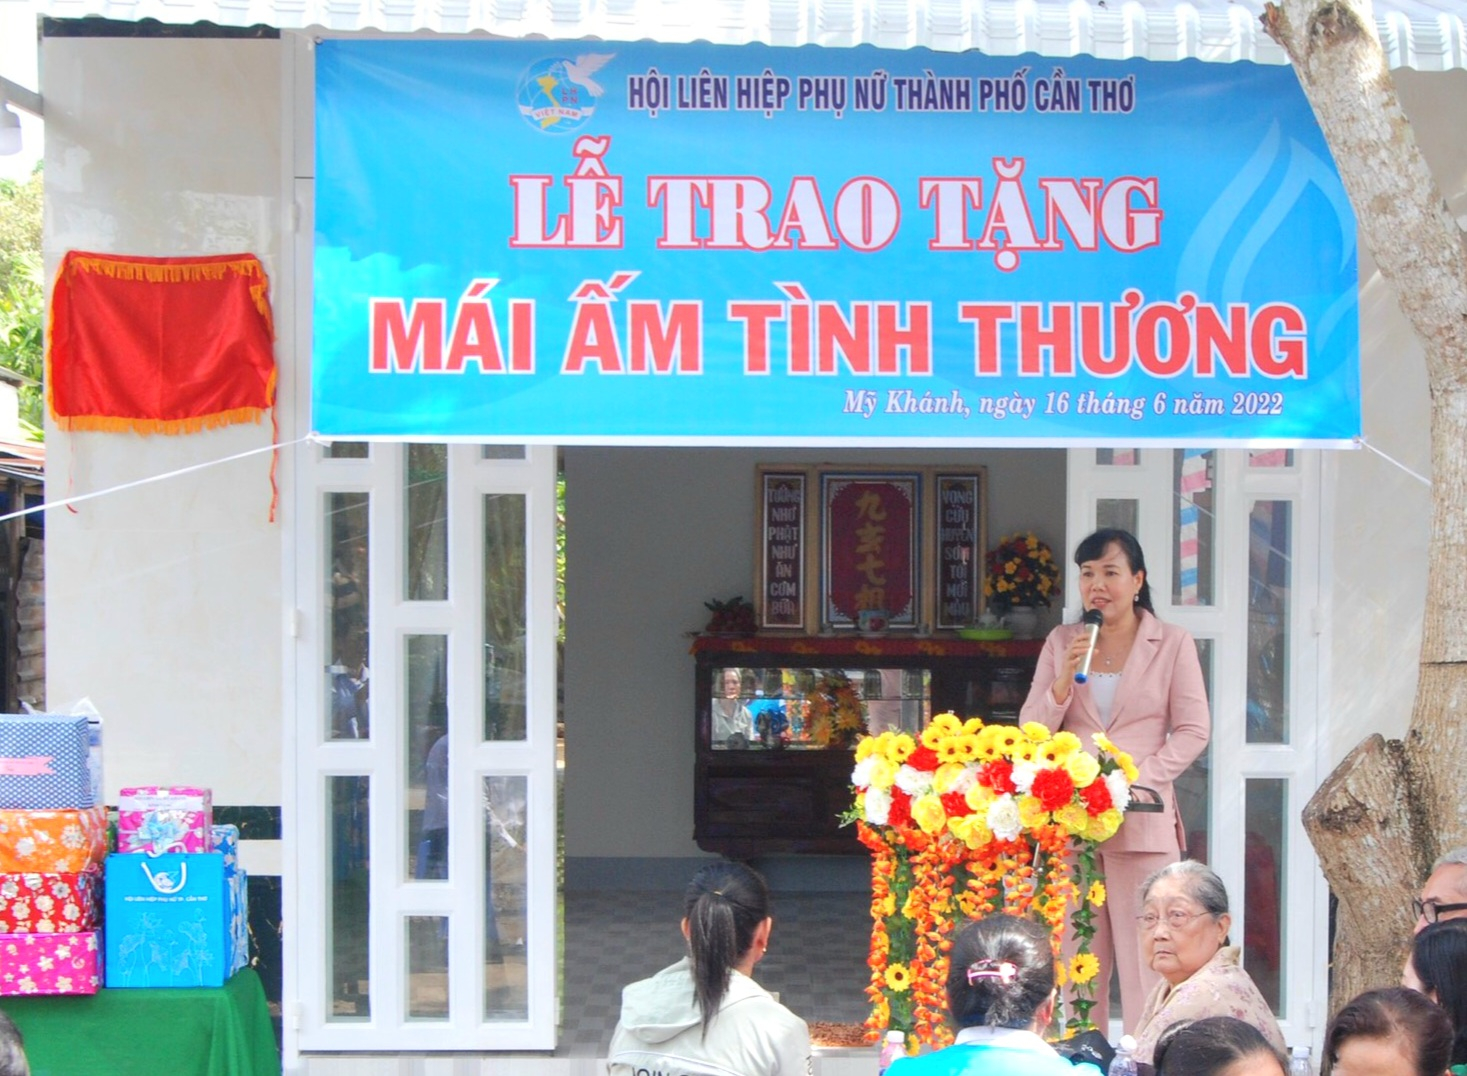 Bà Võ Kim Thoa - UV.ĐCT TW Hội, TUV, Chủ tịch Hội LHPN TP. Cần Thơ phát biểu tại lễ trao tặng Mái ấm tình thương.